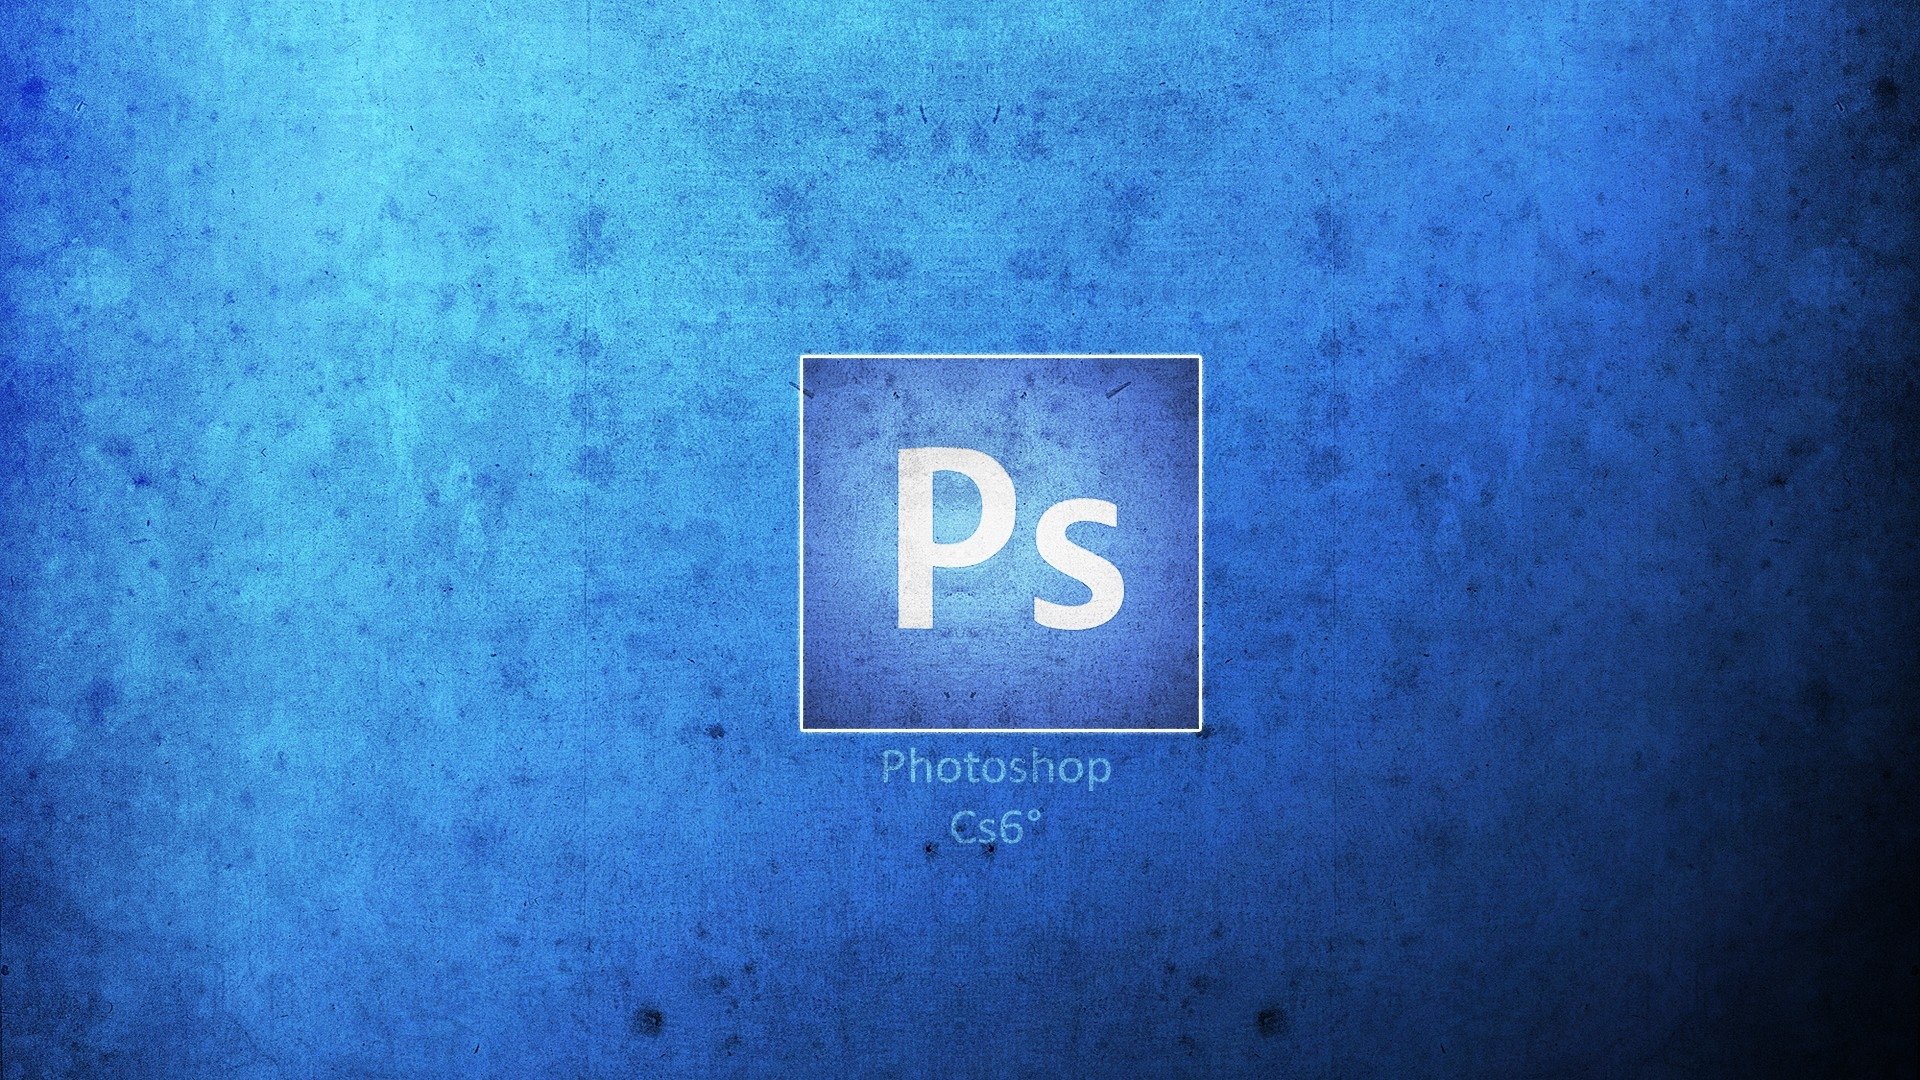 حمل برنامج Photoshop cs6 للكمبيوتر للتعديل الاحترافي على الصور